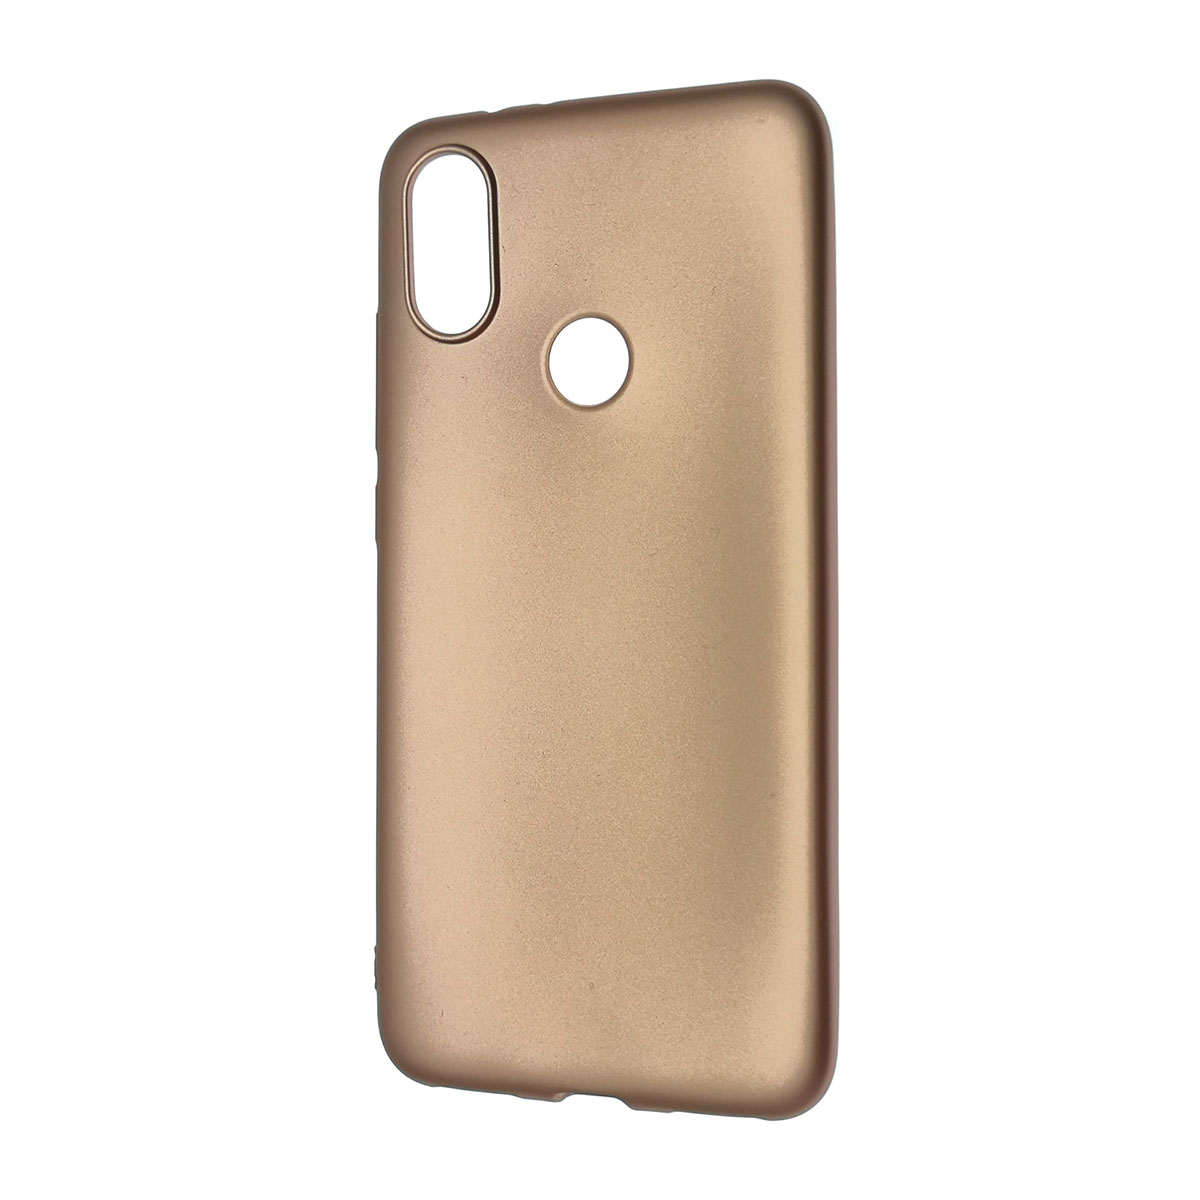 Чехол накладка J-Case THIN для XIAOMI MI 6X, MI A2, силикон, цвет розовое золото.